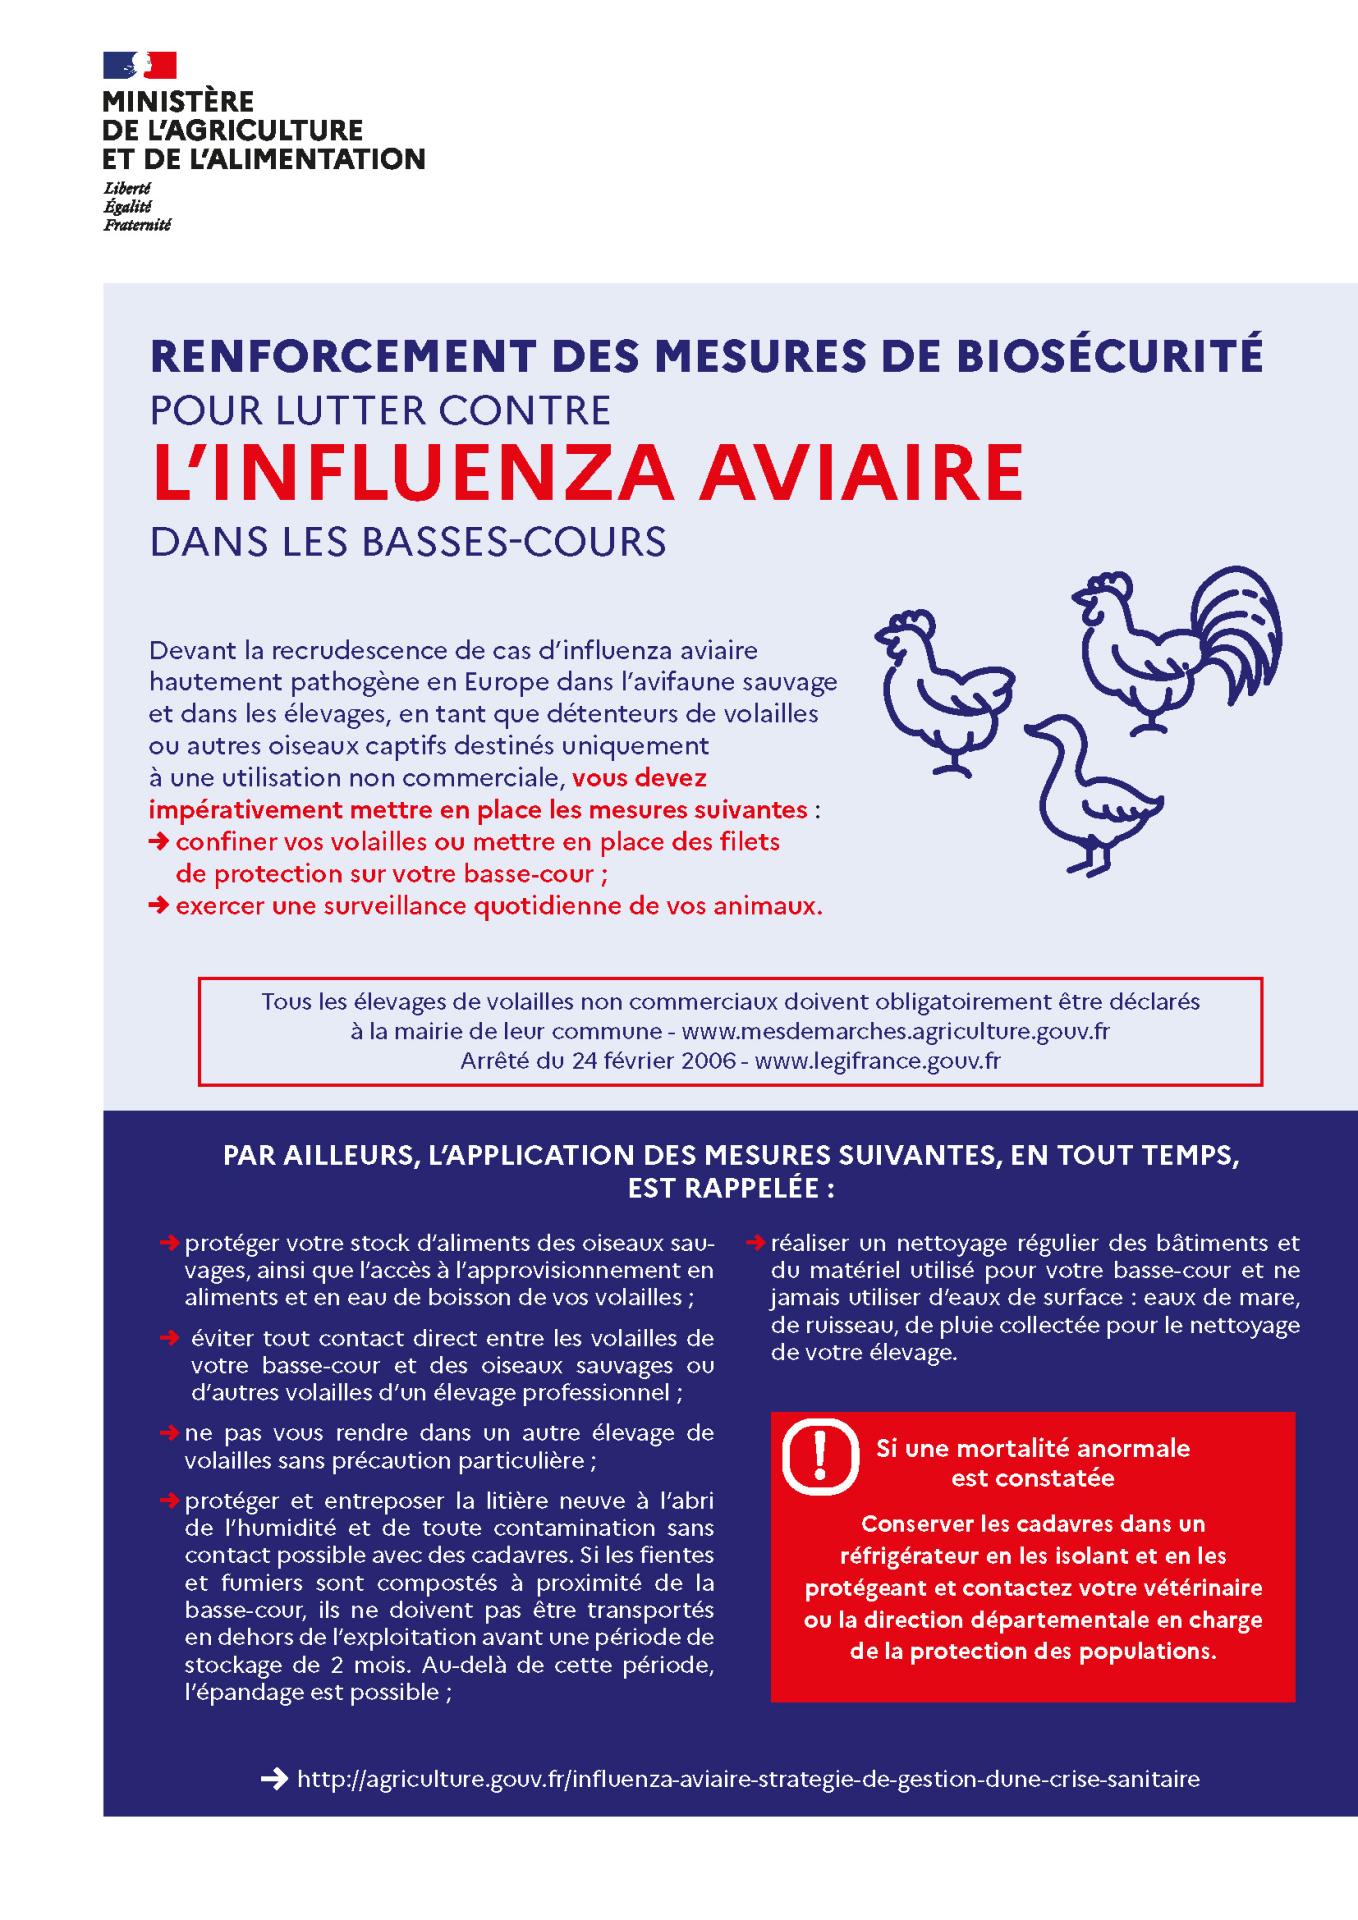 Obligation de recensement des porcs et sangliers / Renforcement des mesures de lutte contre la grippe aviaire